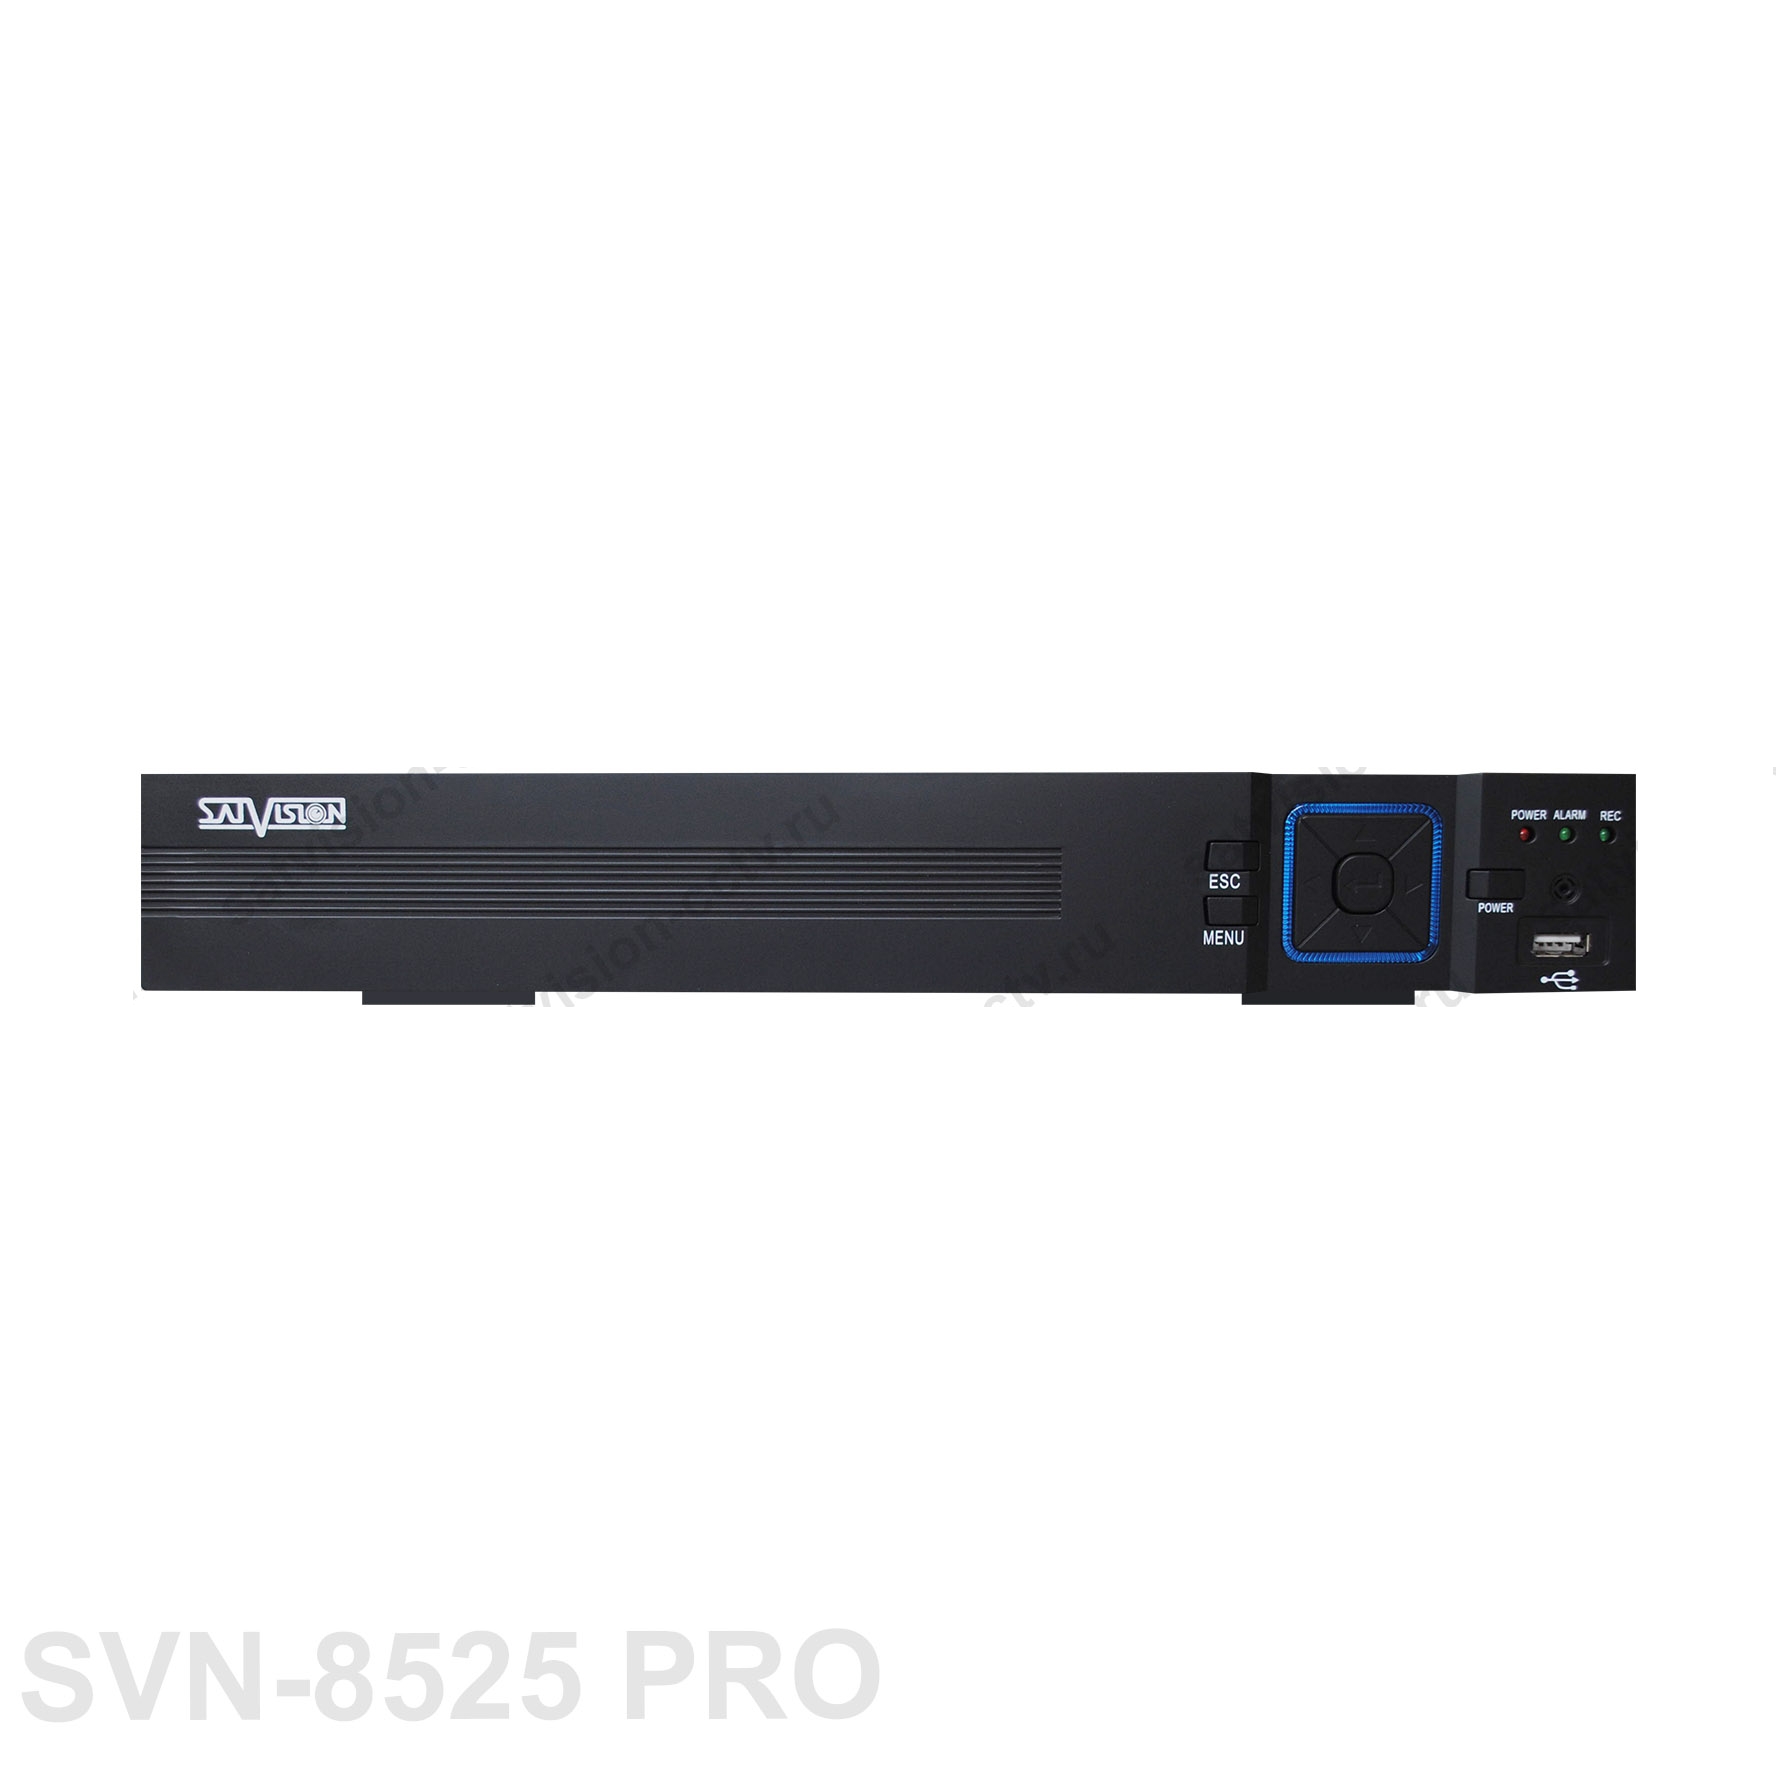 8-канальная система видеонаблюдения SVN-8525 PRO